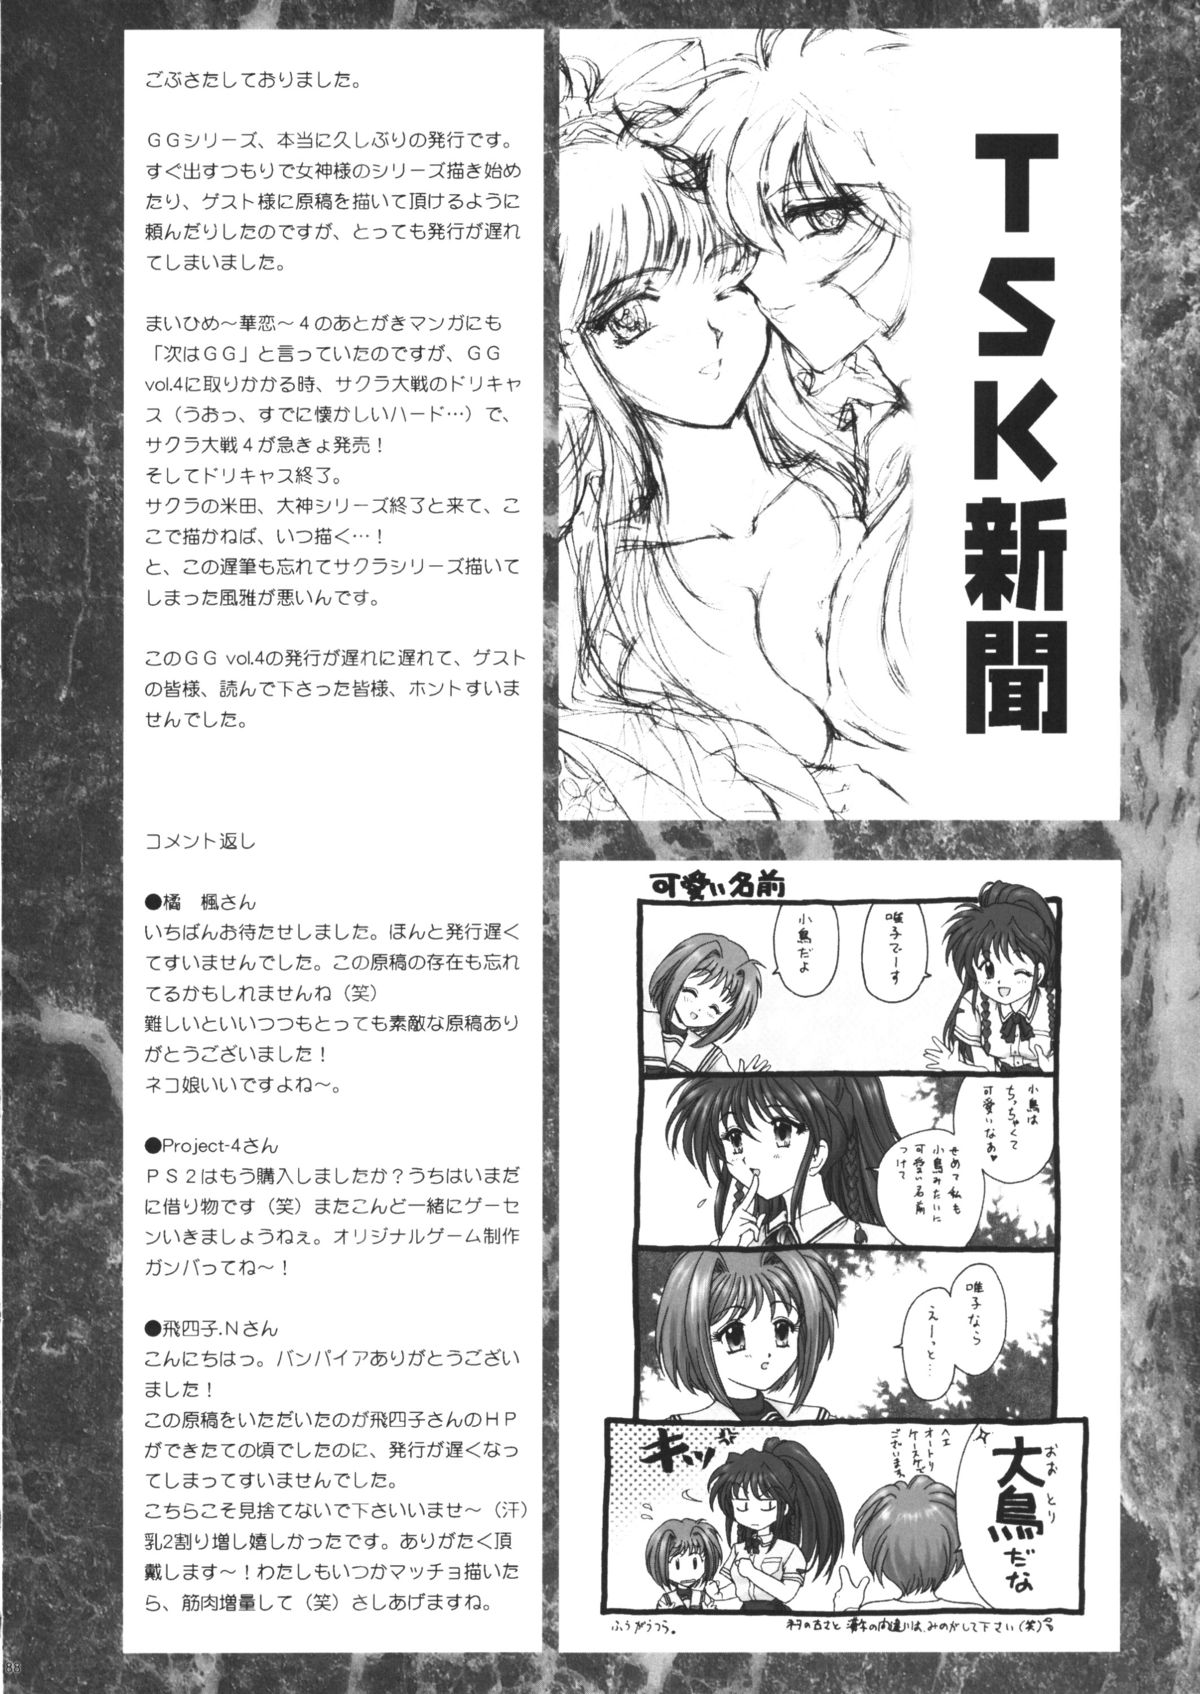 [TSK (風雅うつら)] GG vol.4 (ああっ女神さまっ)